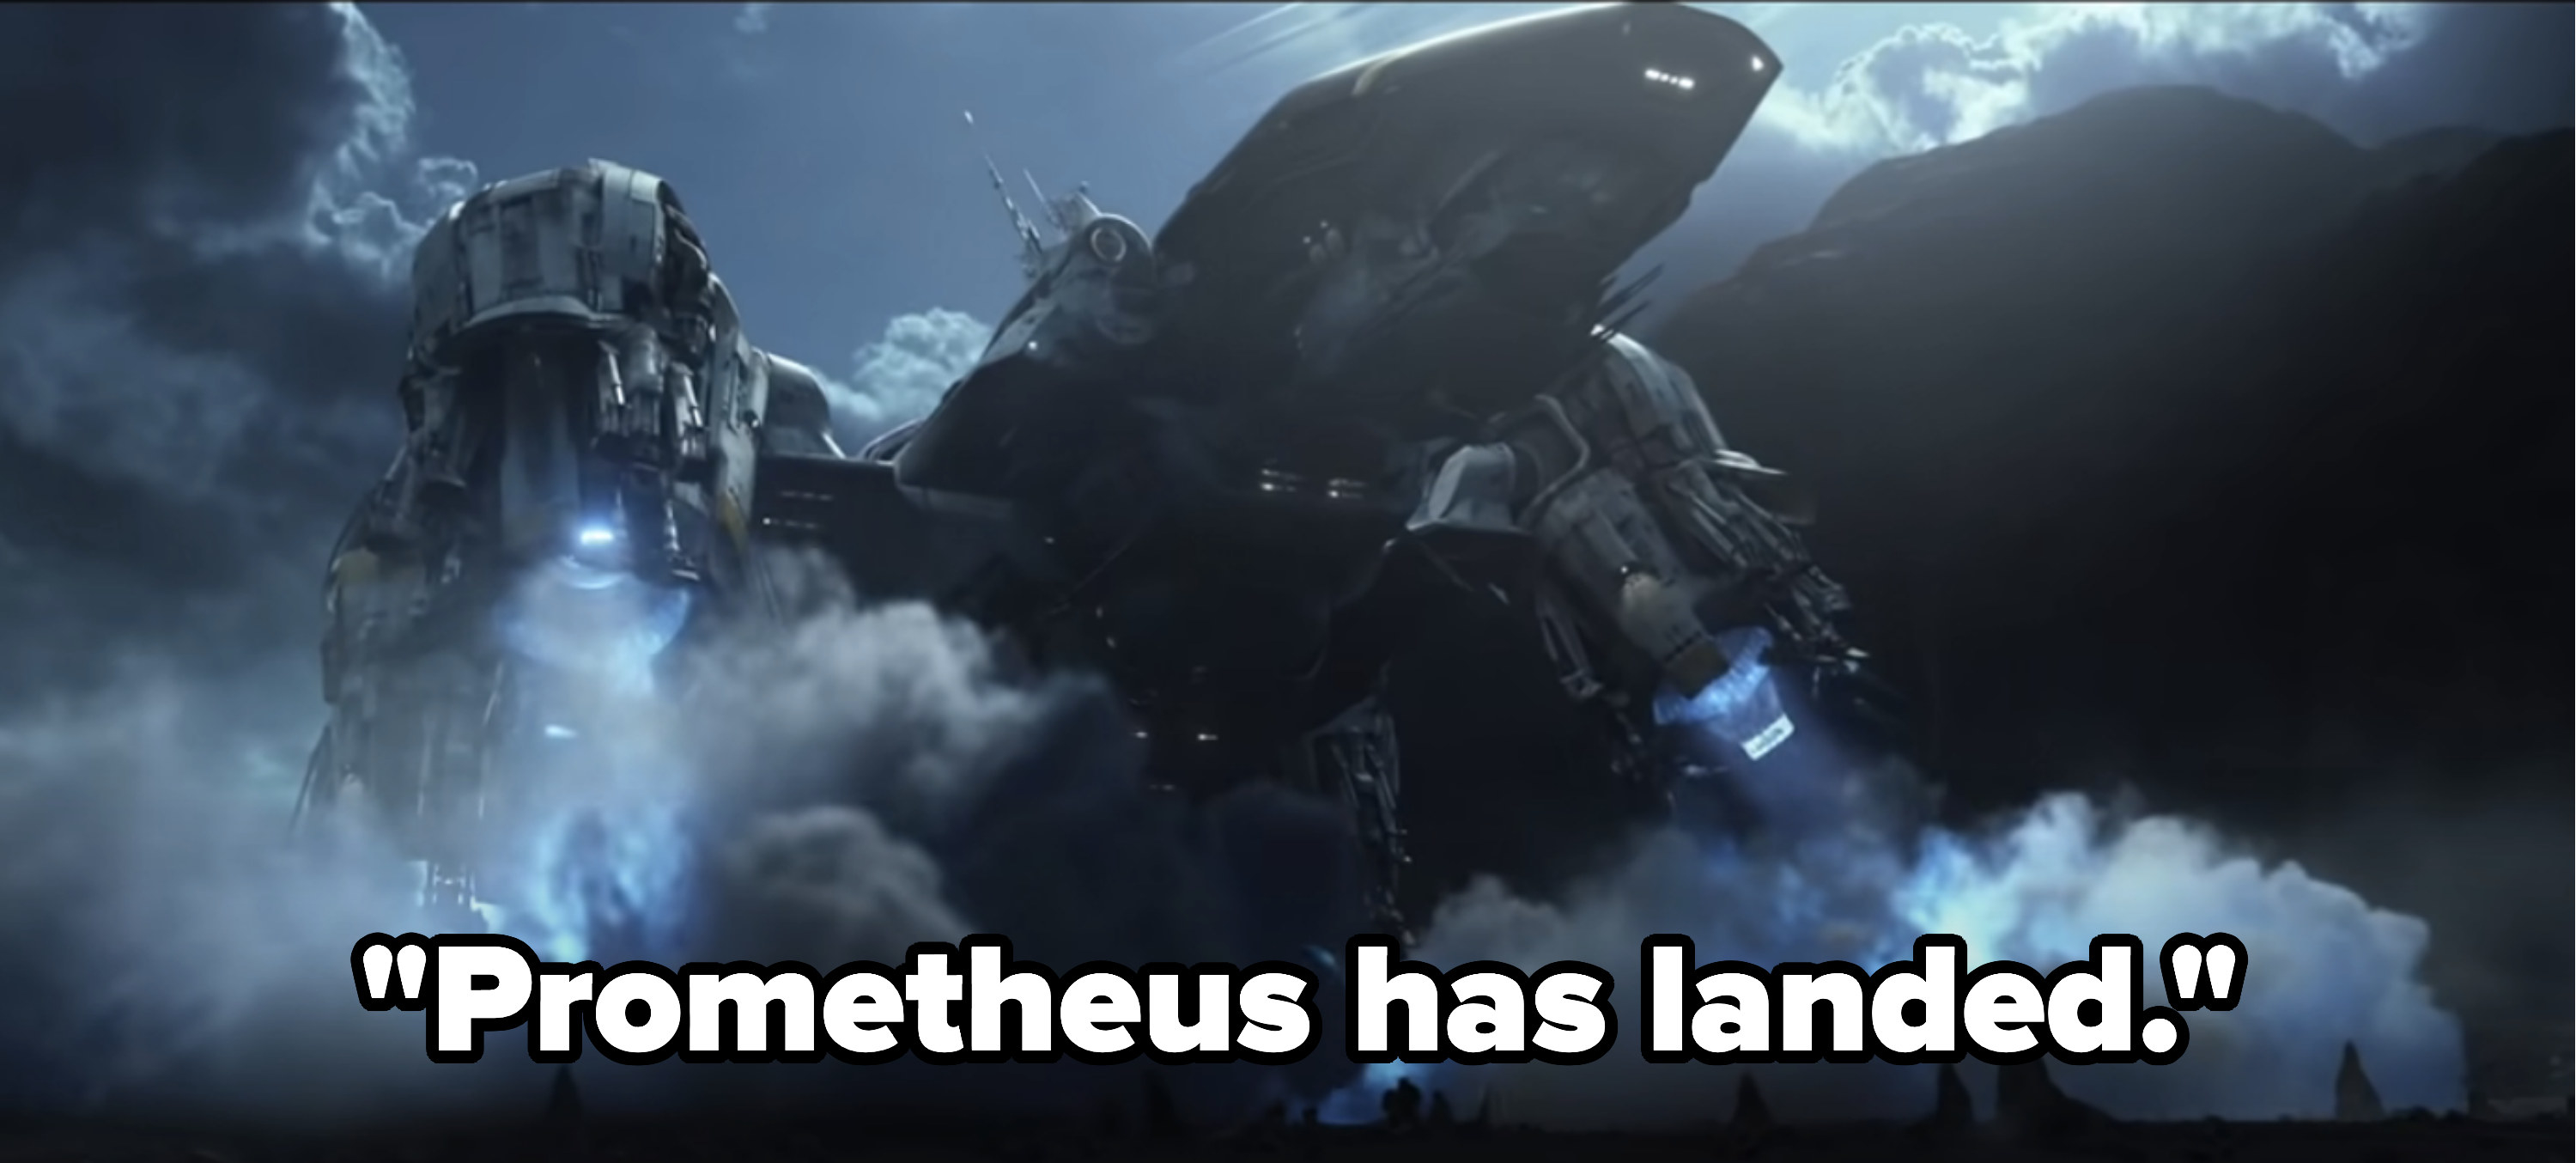 &quot;Prometheus has landed.&quot;